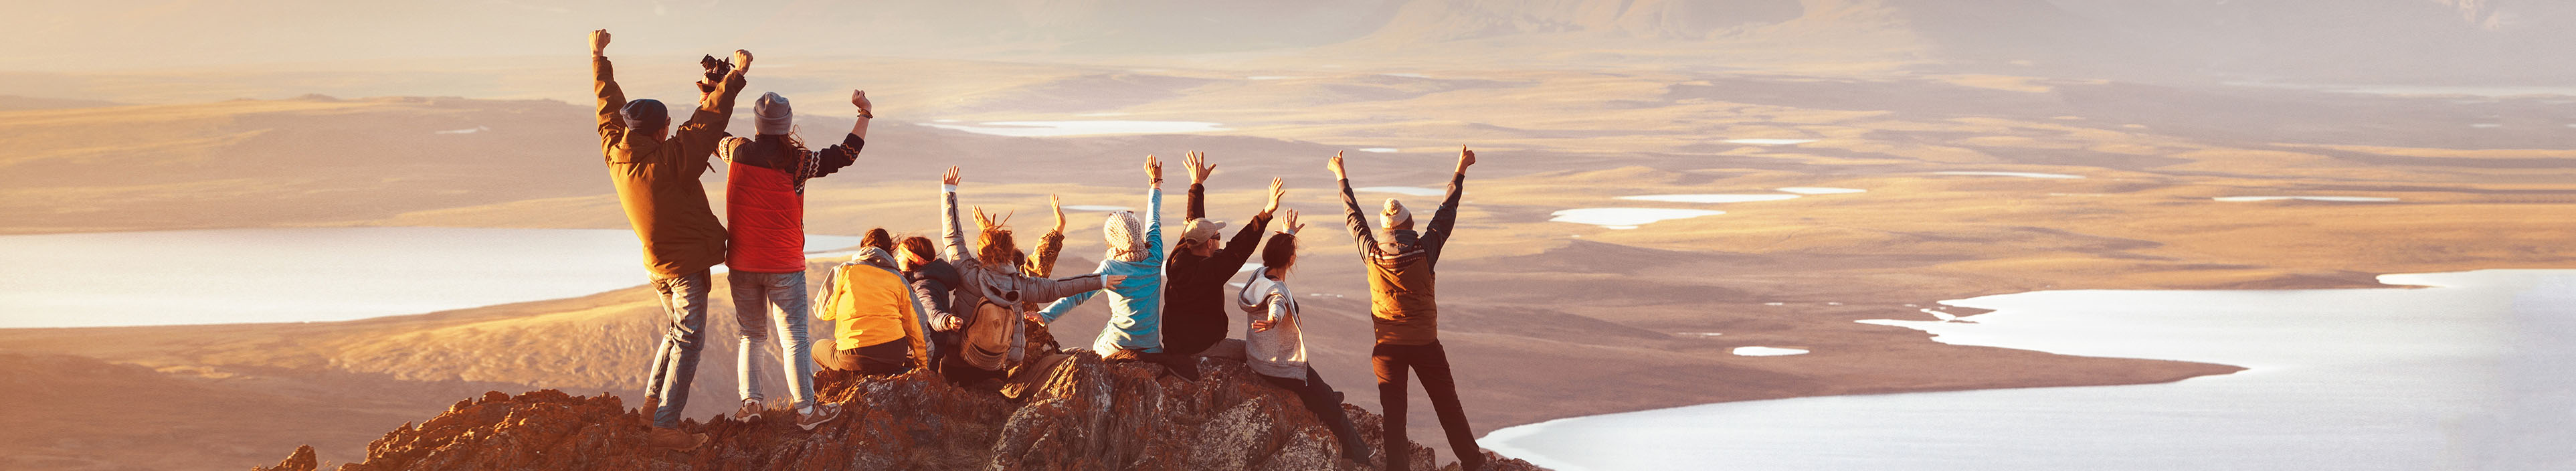 Reisegruppe steht auf dem Berg und genießt den Ausblick mit Sonnenaufgang. Alle haben ihre Hände gehoben und jubeln.